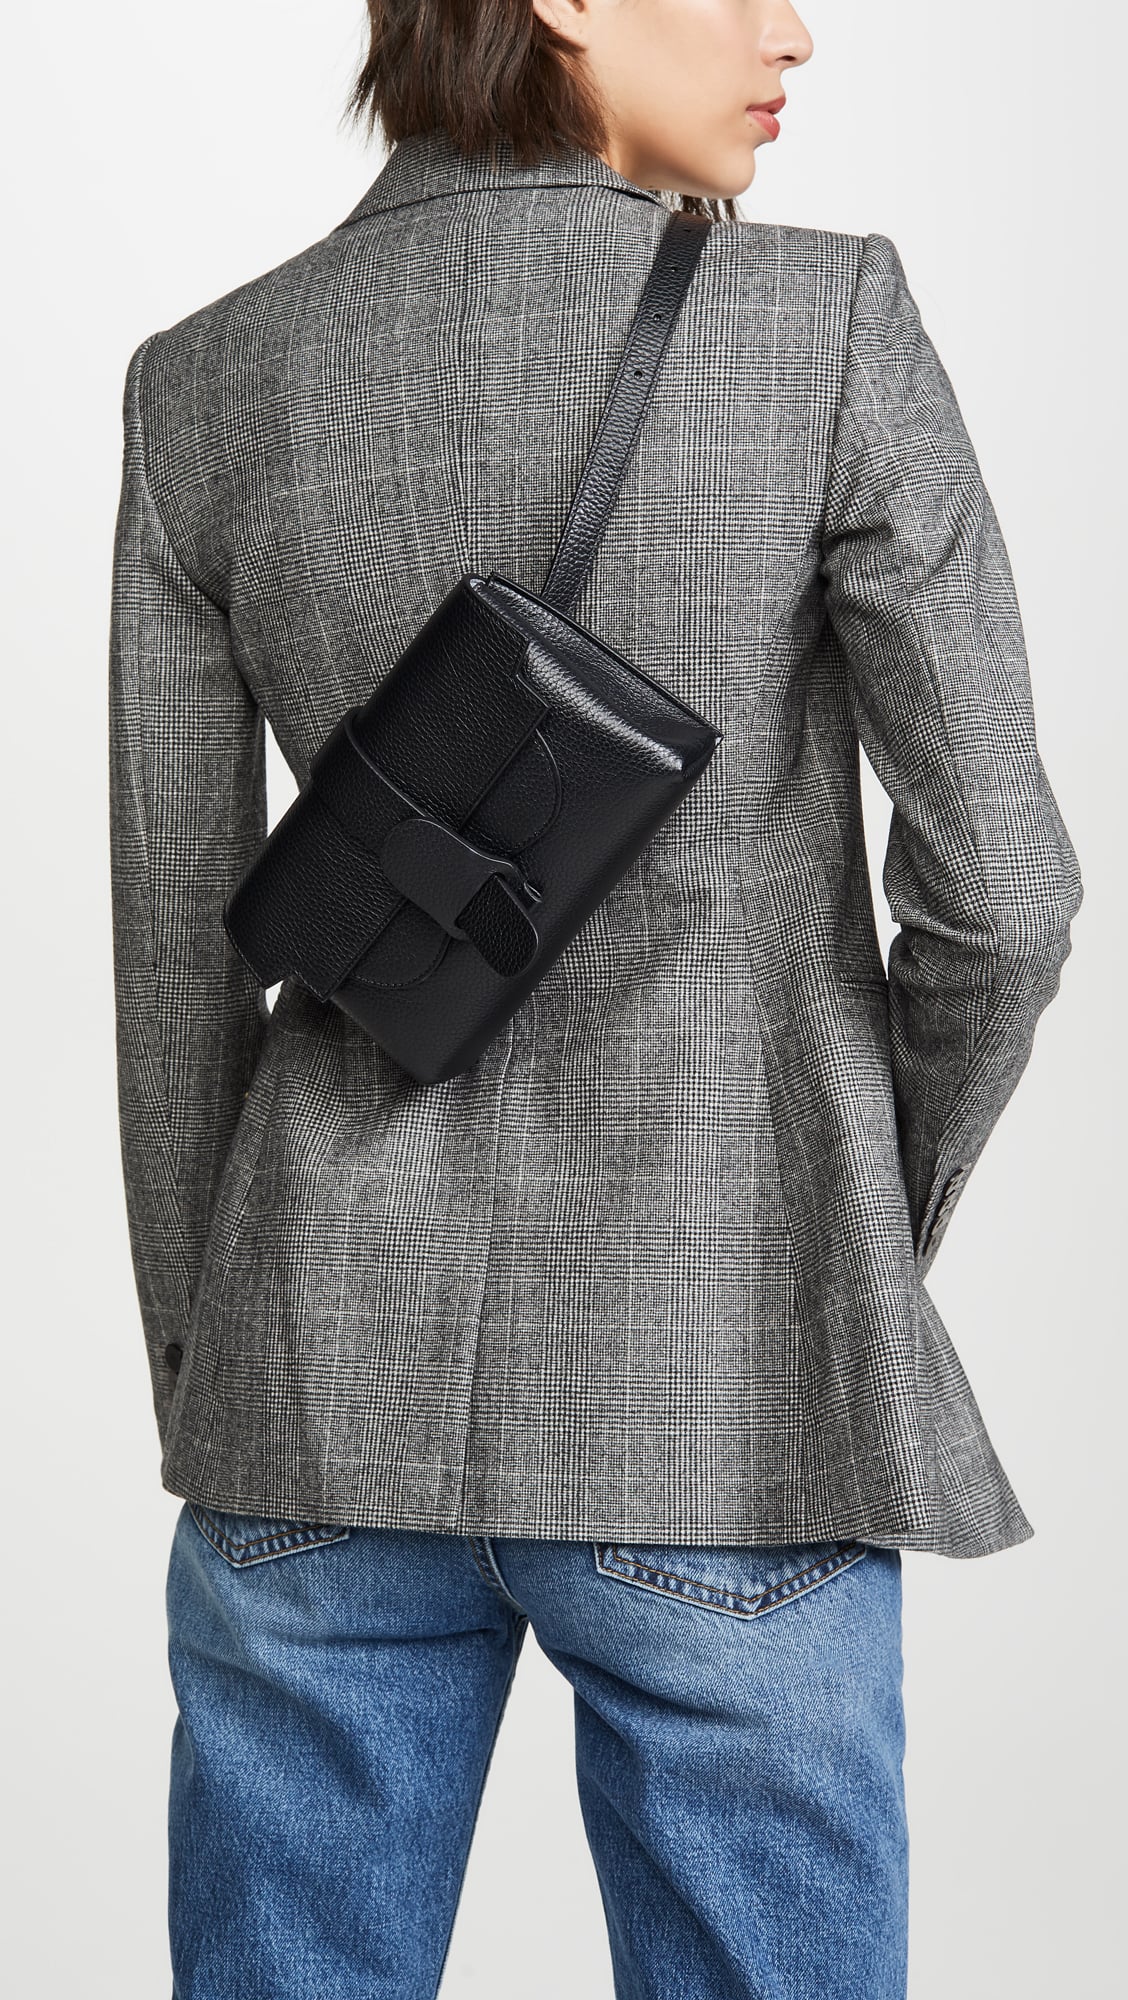 Senreve Aria Leather Belt Bag, $395, Nordstrom